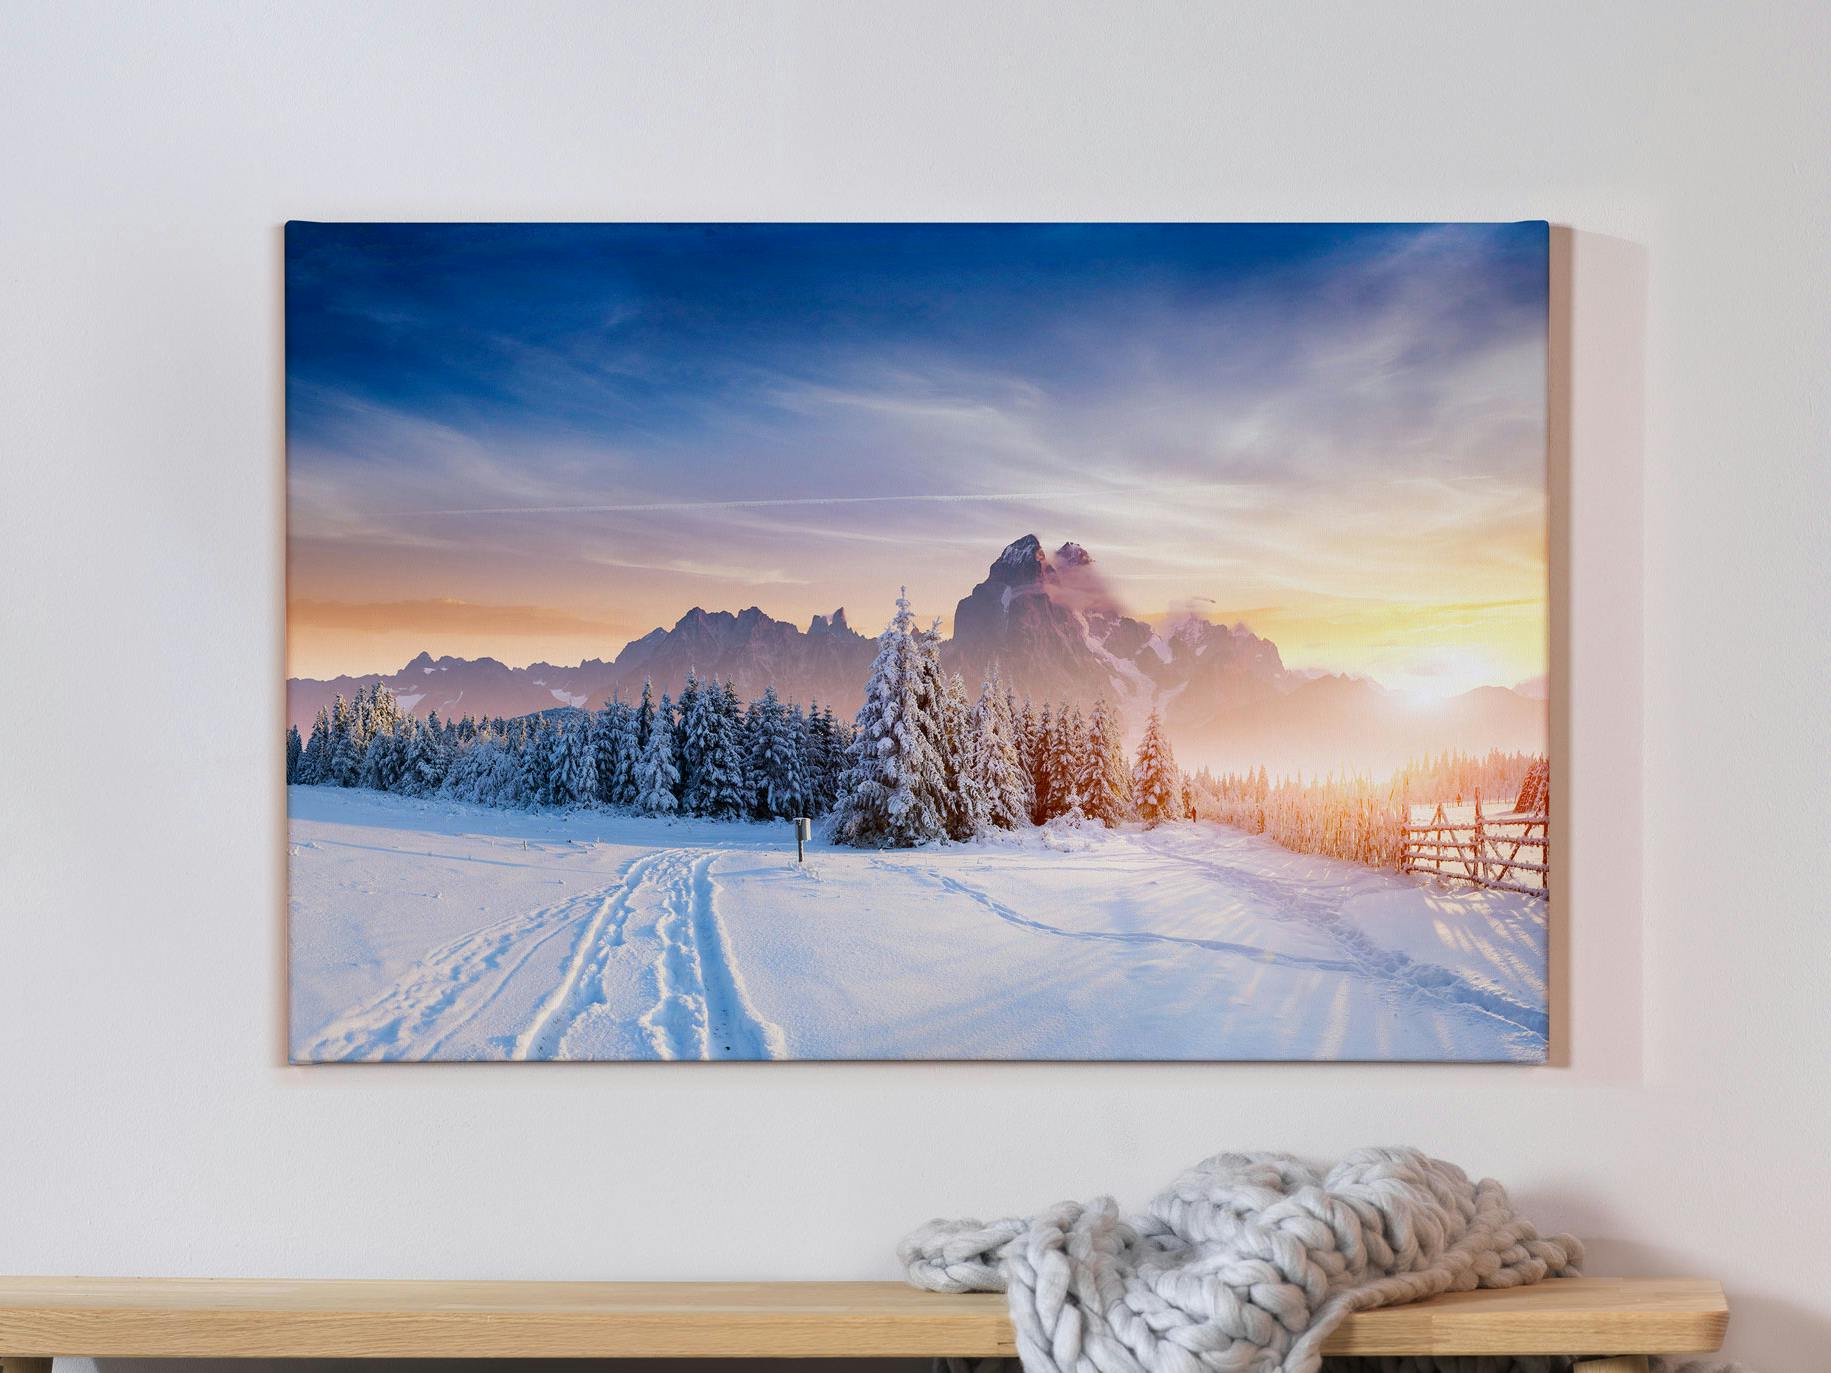 Foto op canvas met winterse landschapsfoto's op een grijze muur